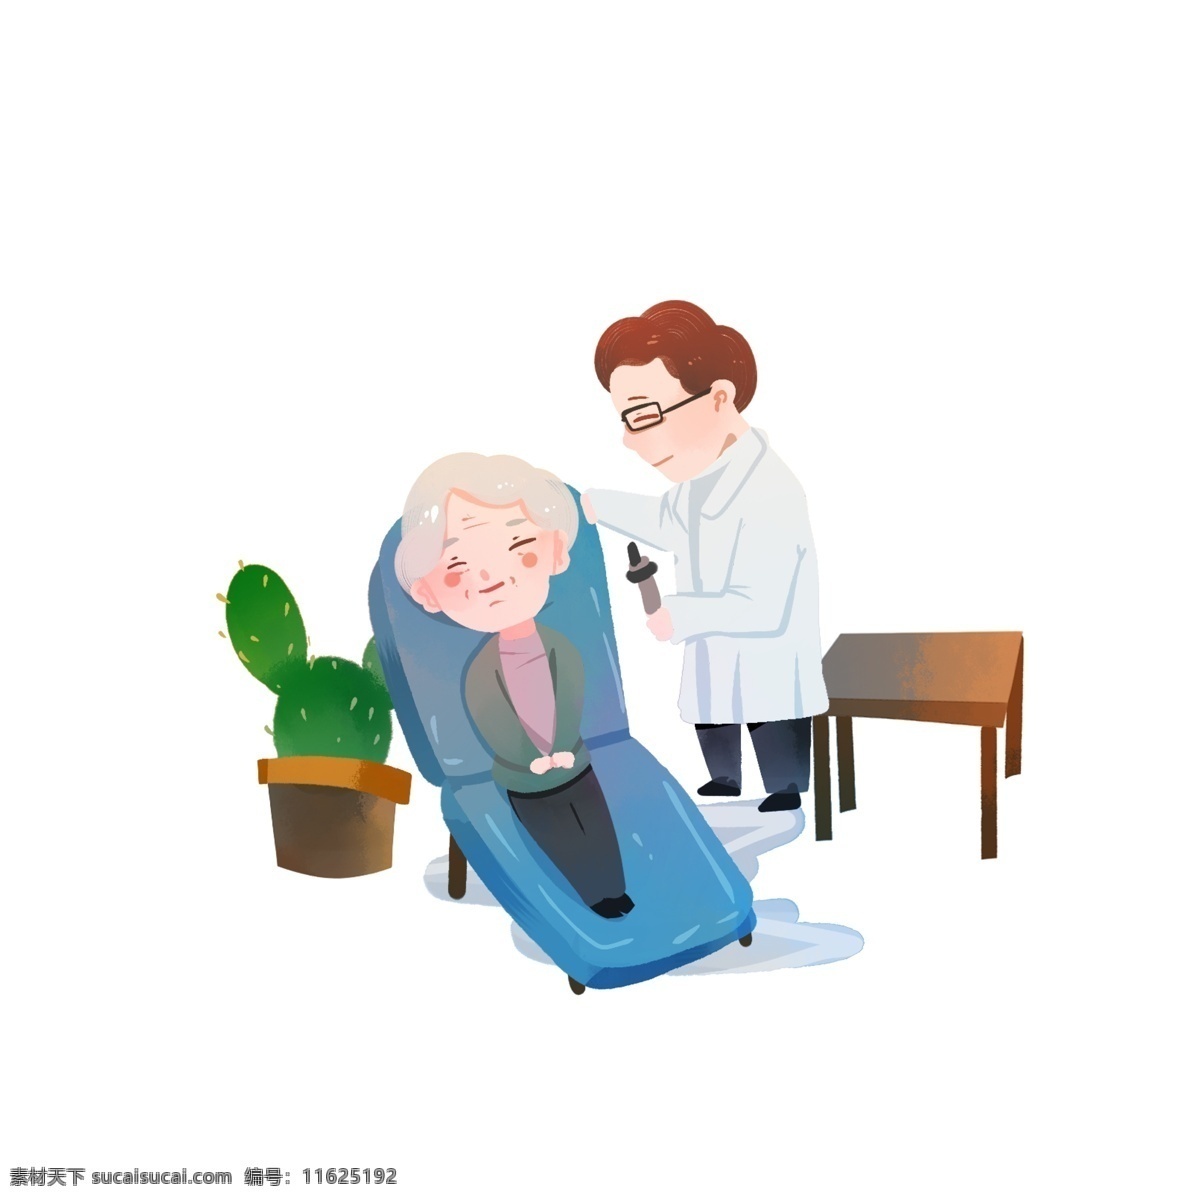 医生 检查 耳朵 病人 人物 场景 插画 元素 看病 老年人